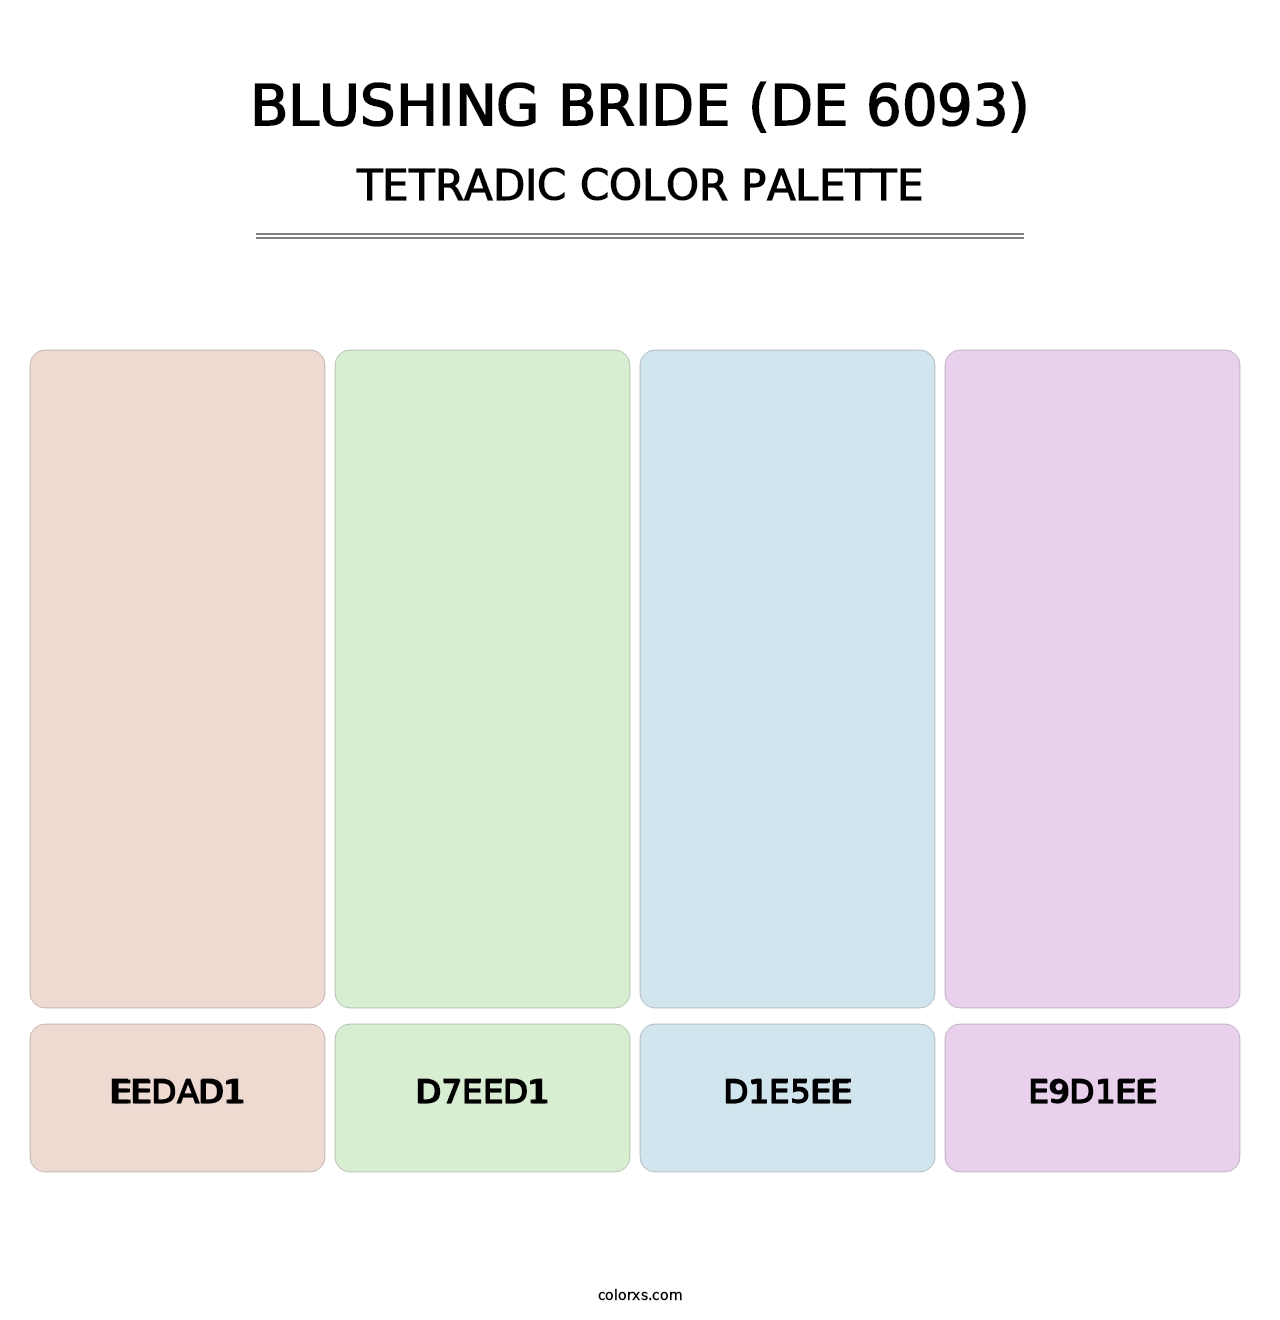 Blushing Bride (DE 6093) - Tetradic Color Palette